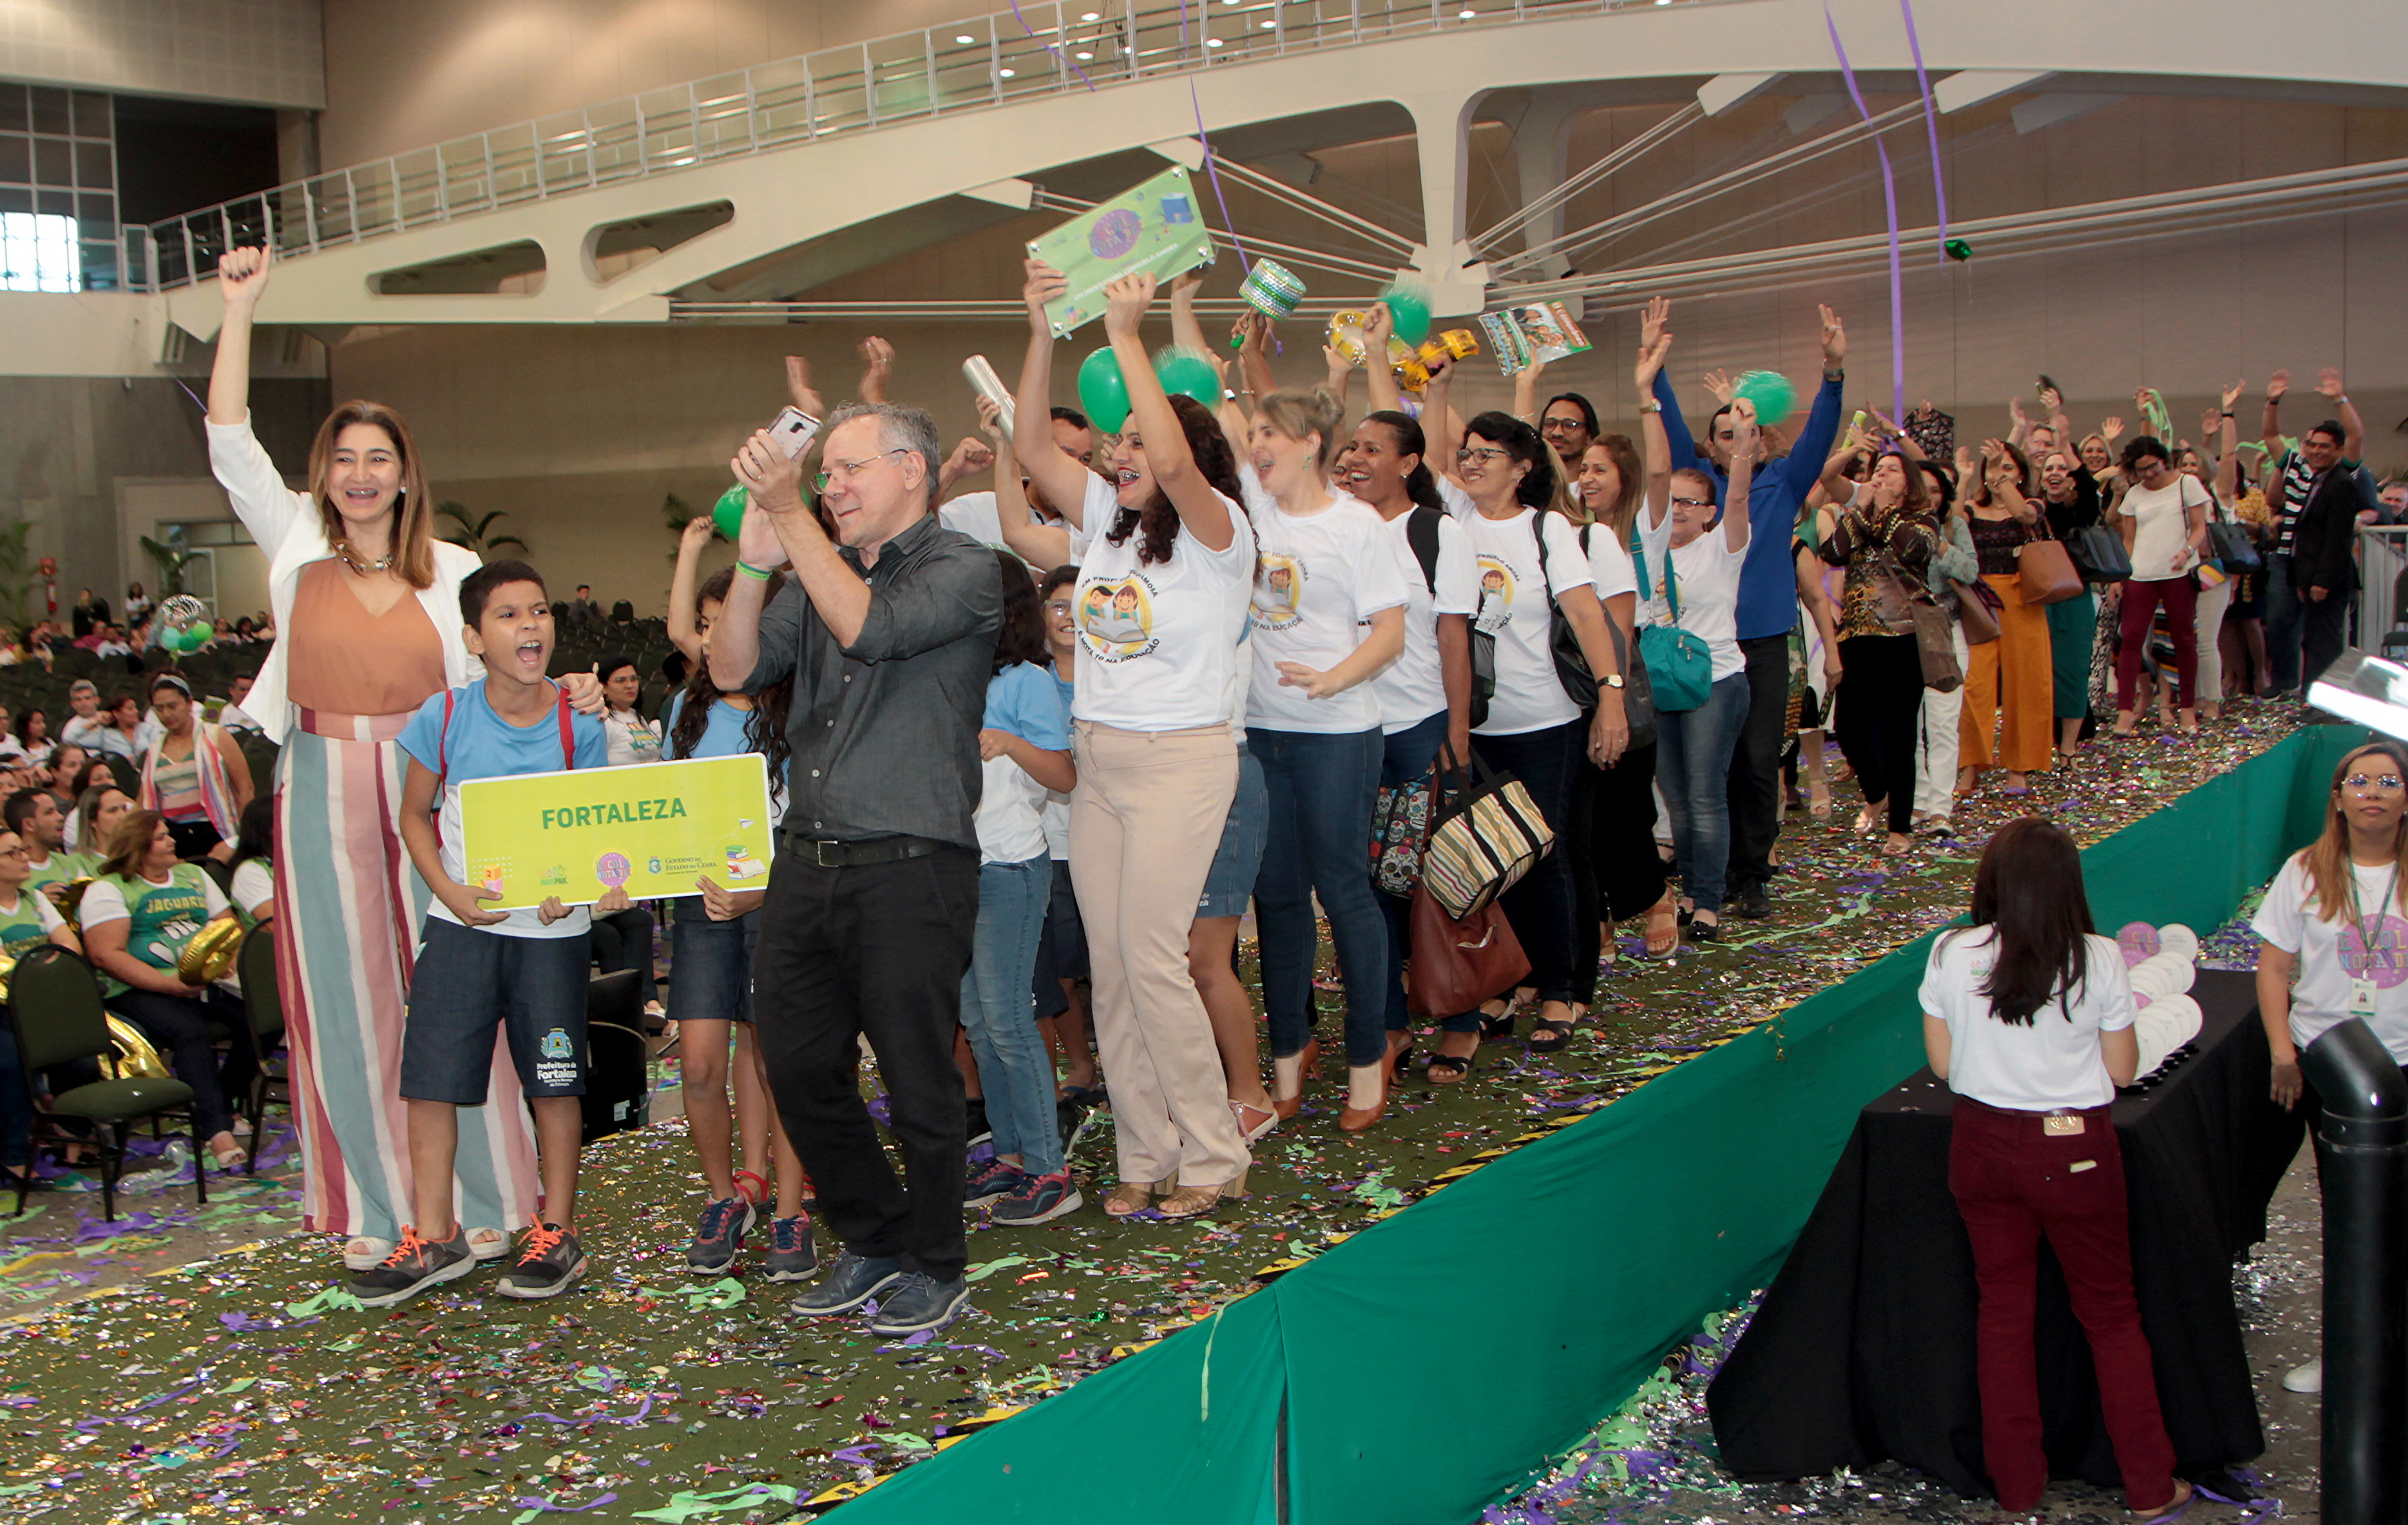 Alunos e profissionais comemoram o reconhecimento do município de Fortaleza